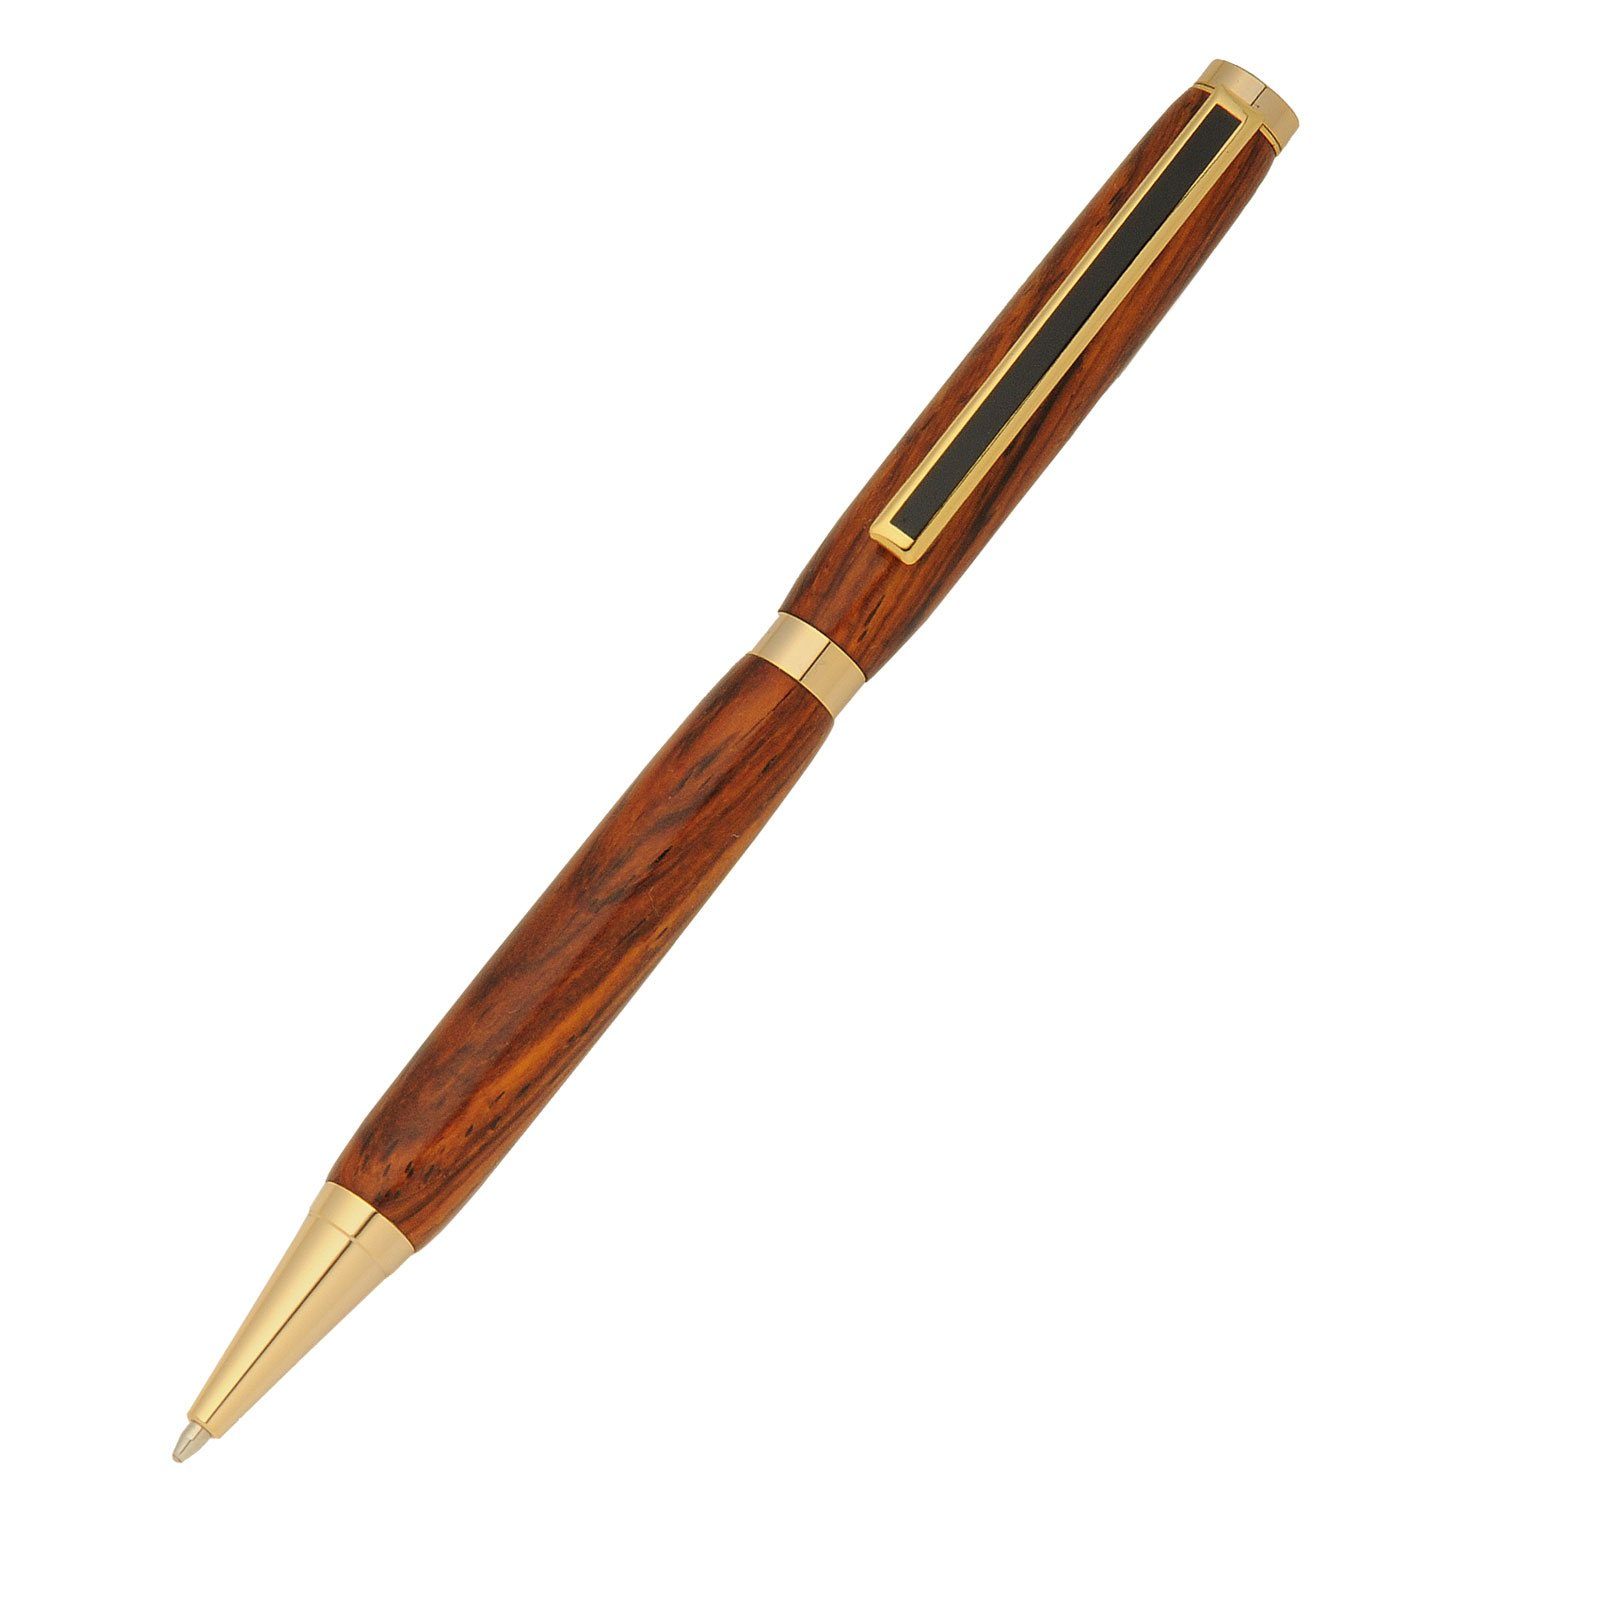 Father's day twist pen lathe pen hand made wood turned turned pen oak, walnut Slimline pens handcrafted pen gift wood pen